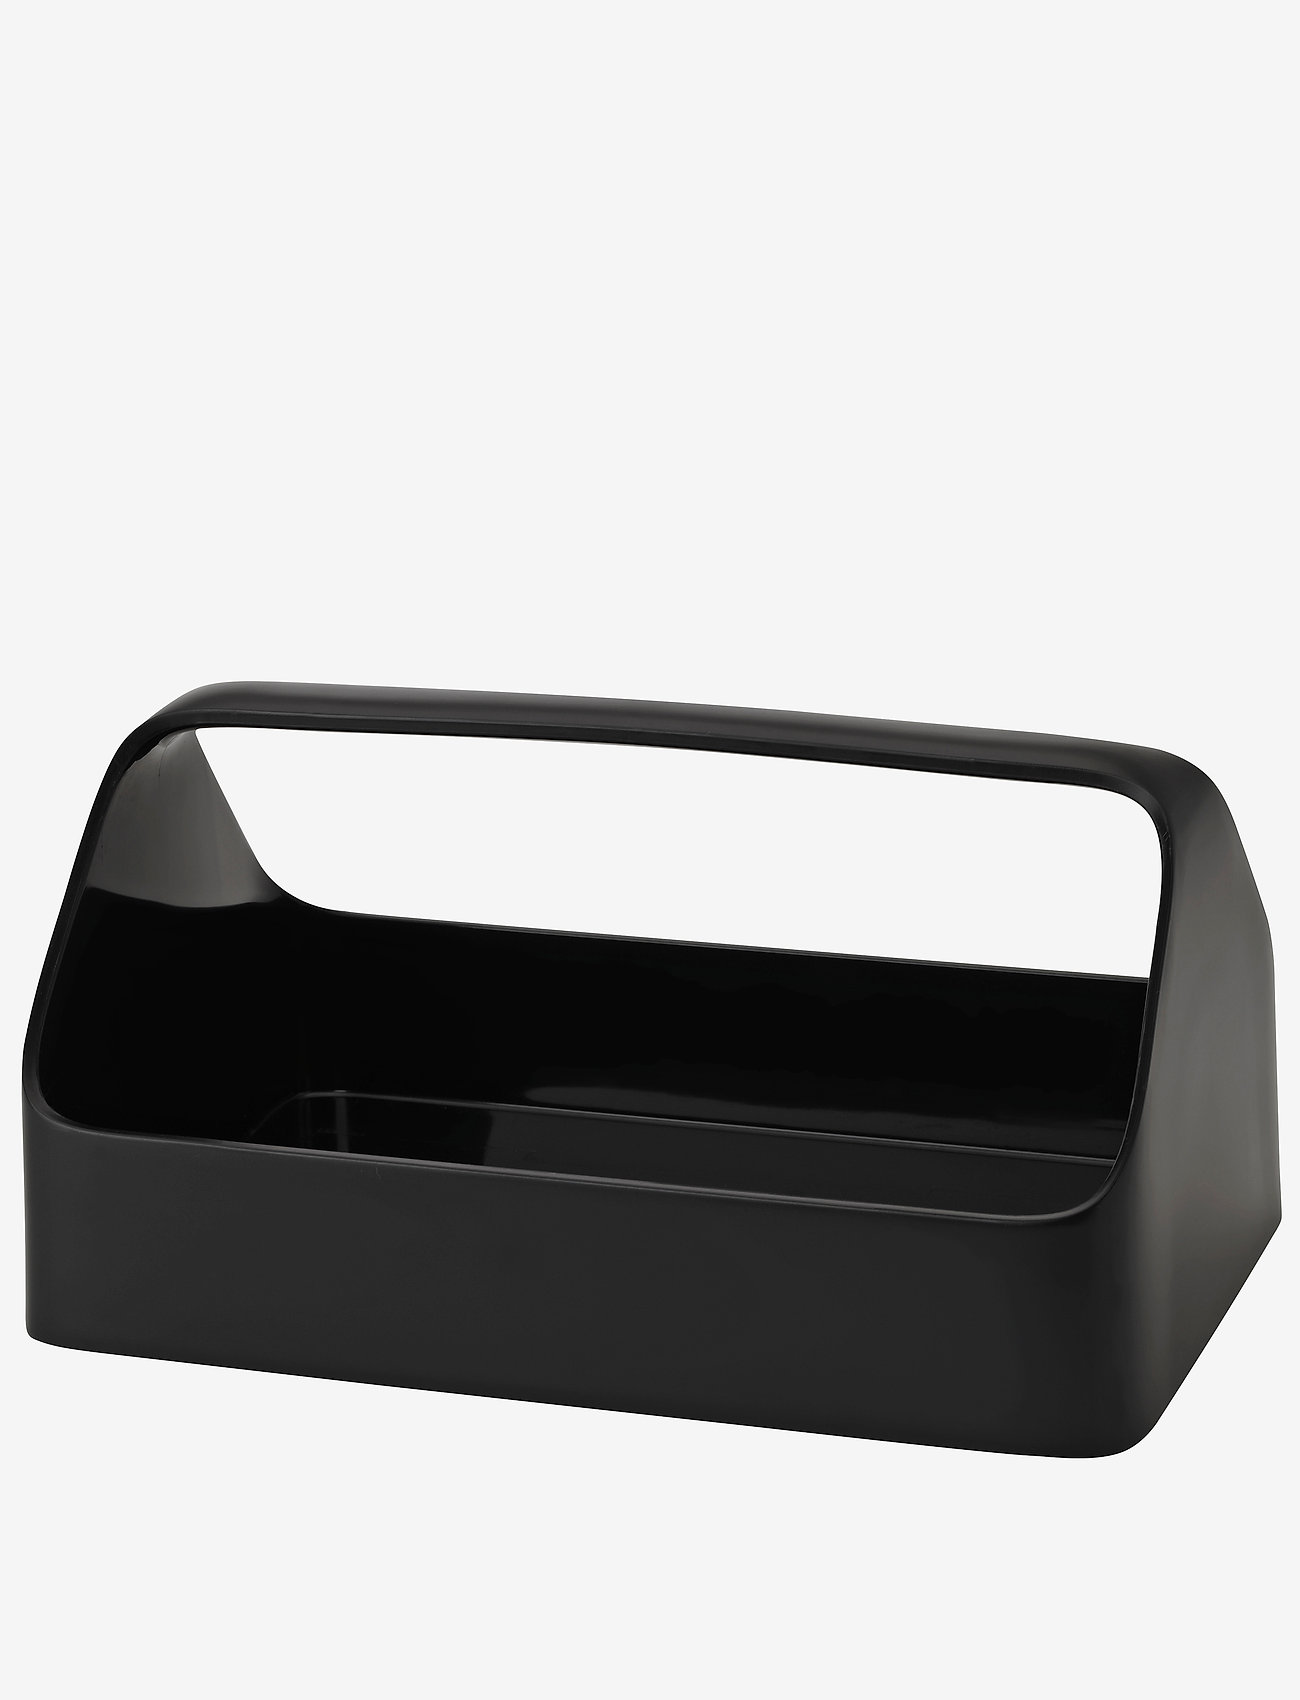 RIG-TIG - HANDY-BOX  storage box- black - mažiausios kainos - black - 0